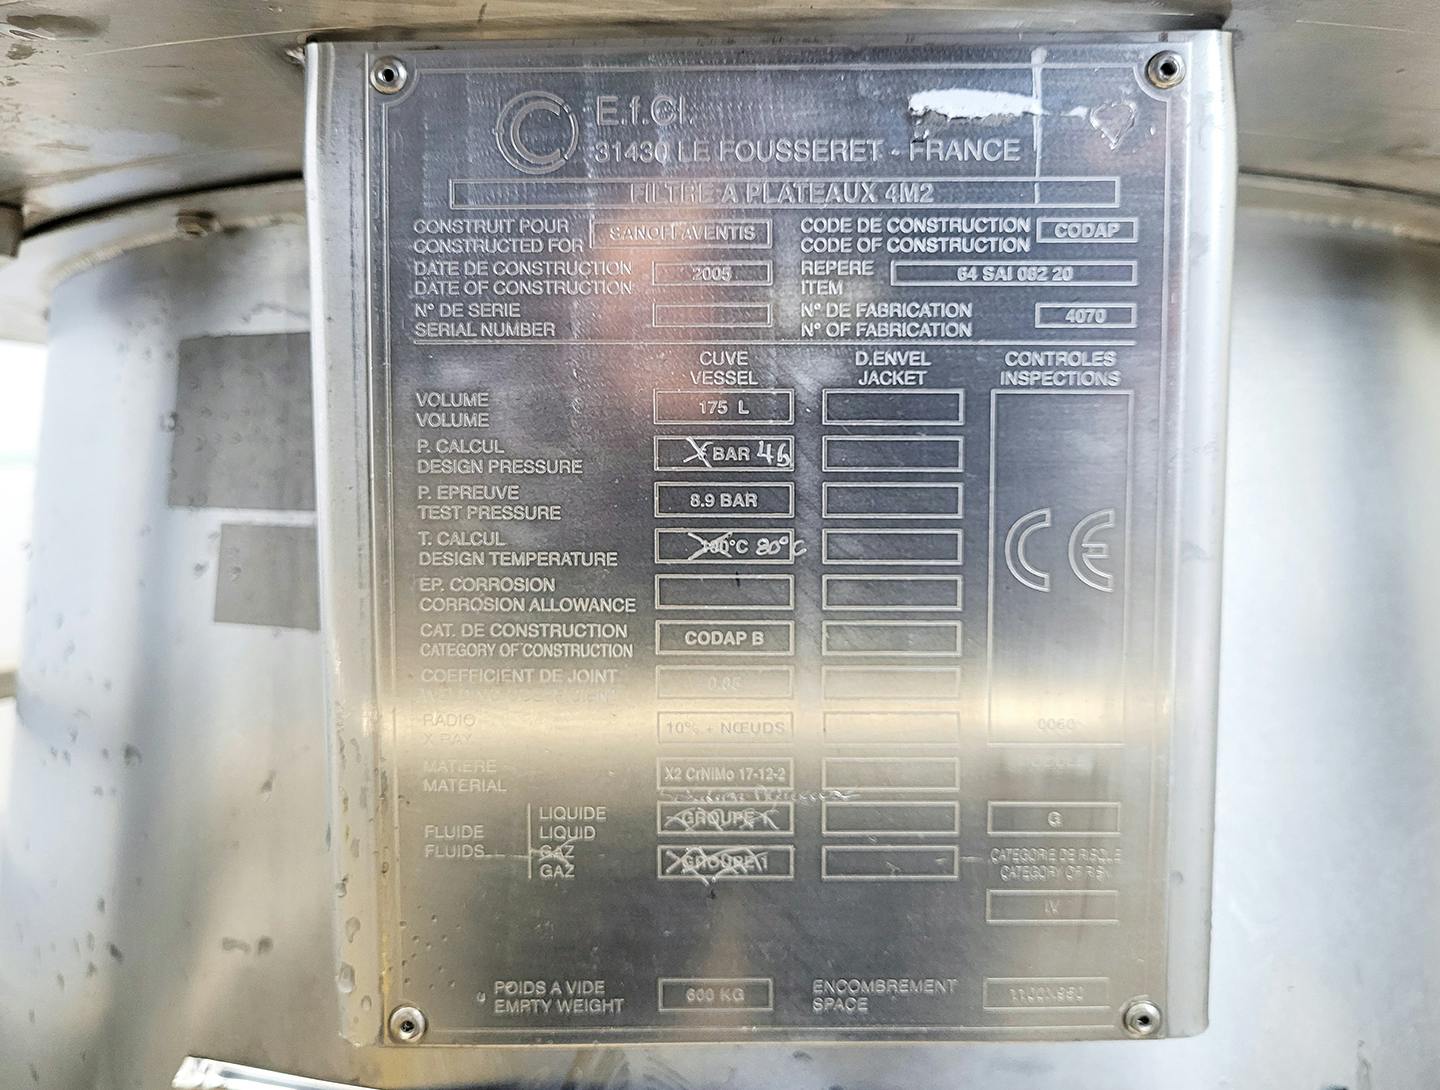 EFCI 4m² - Filtre à plaques horizontales - image 6